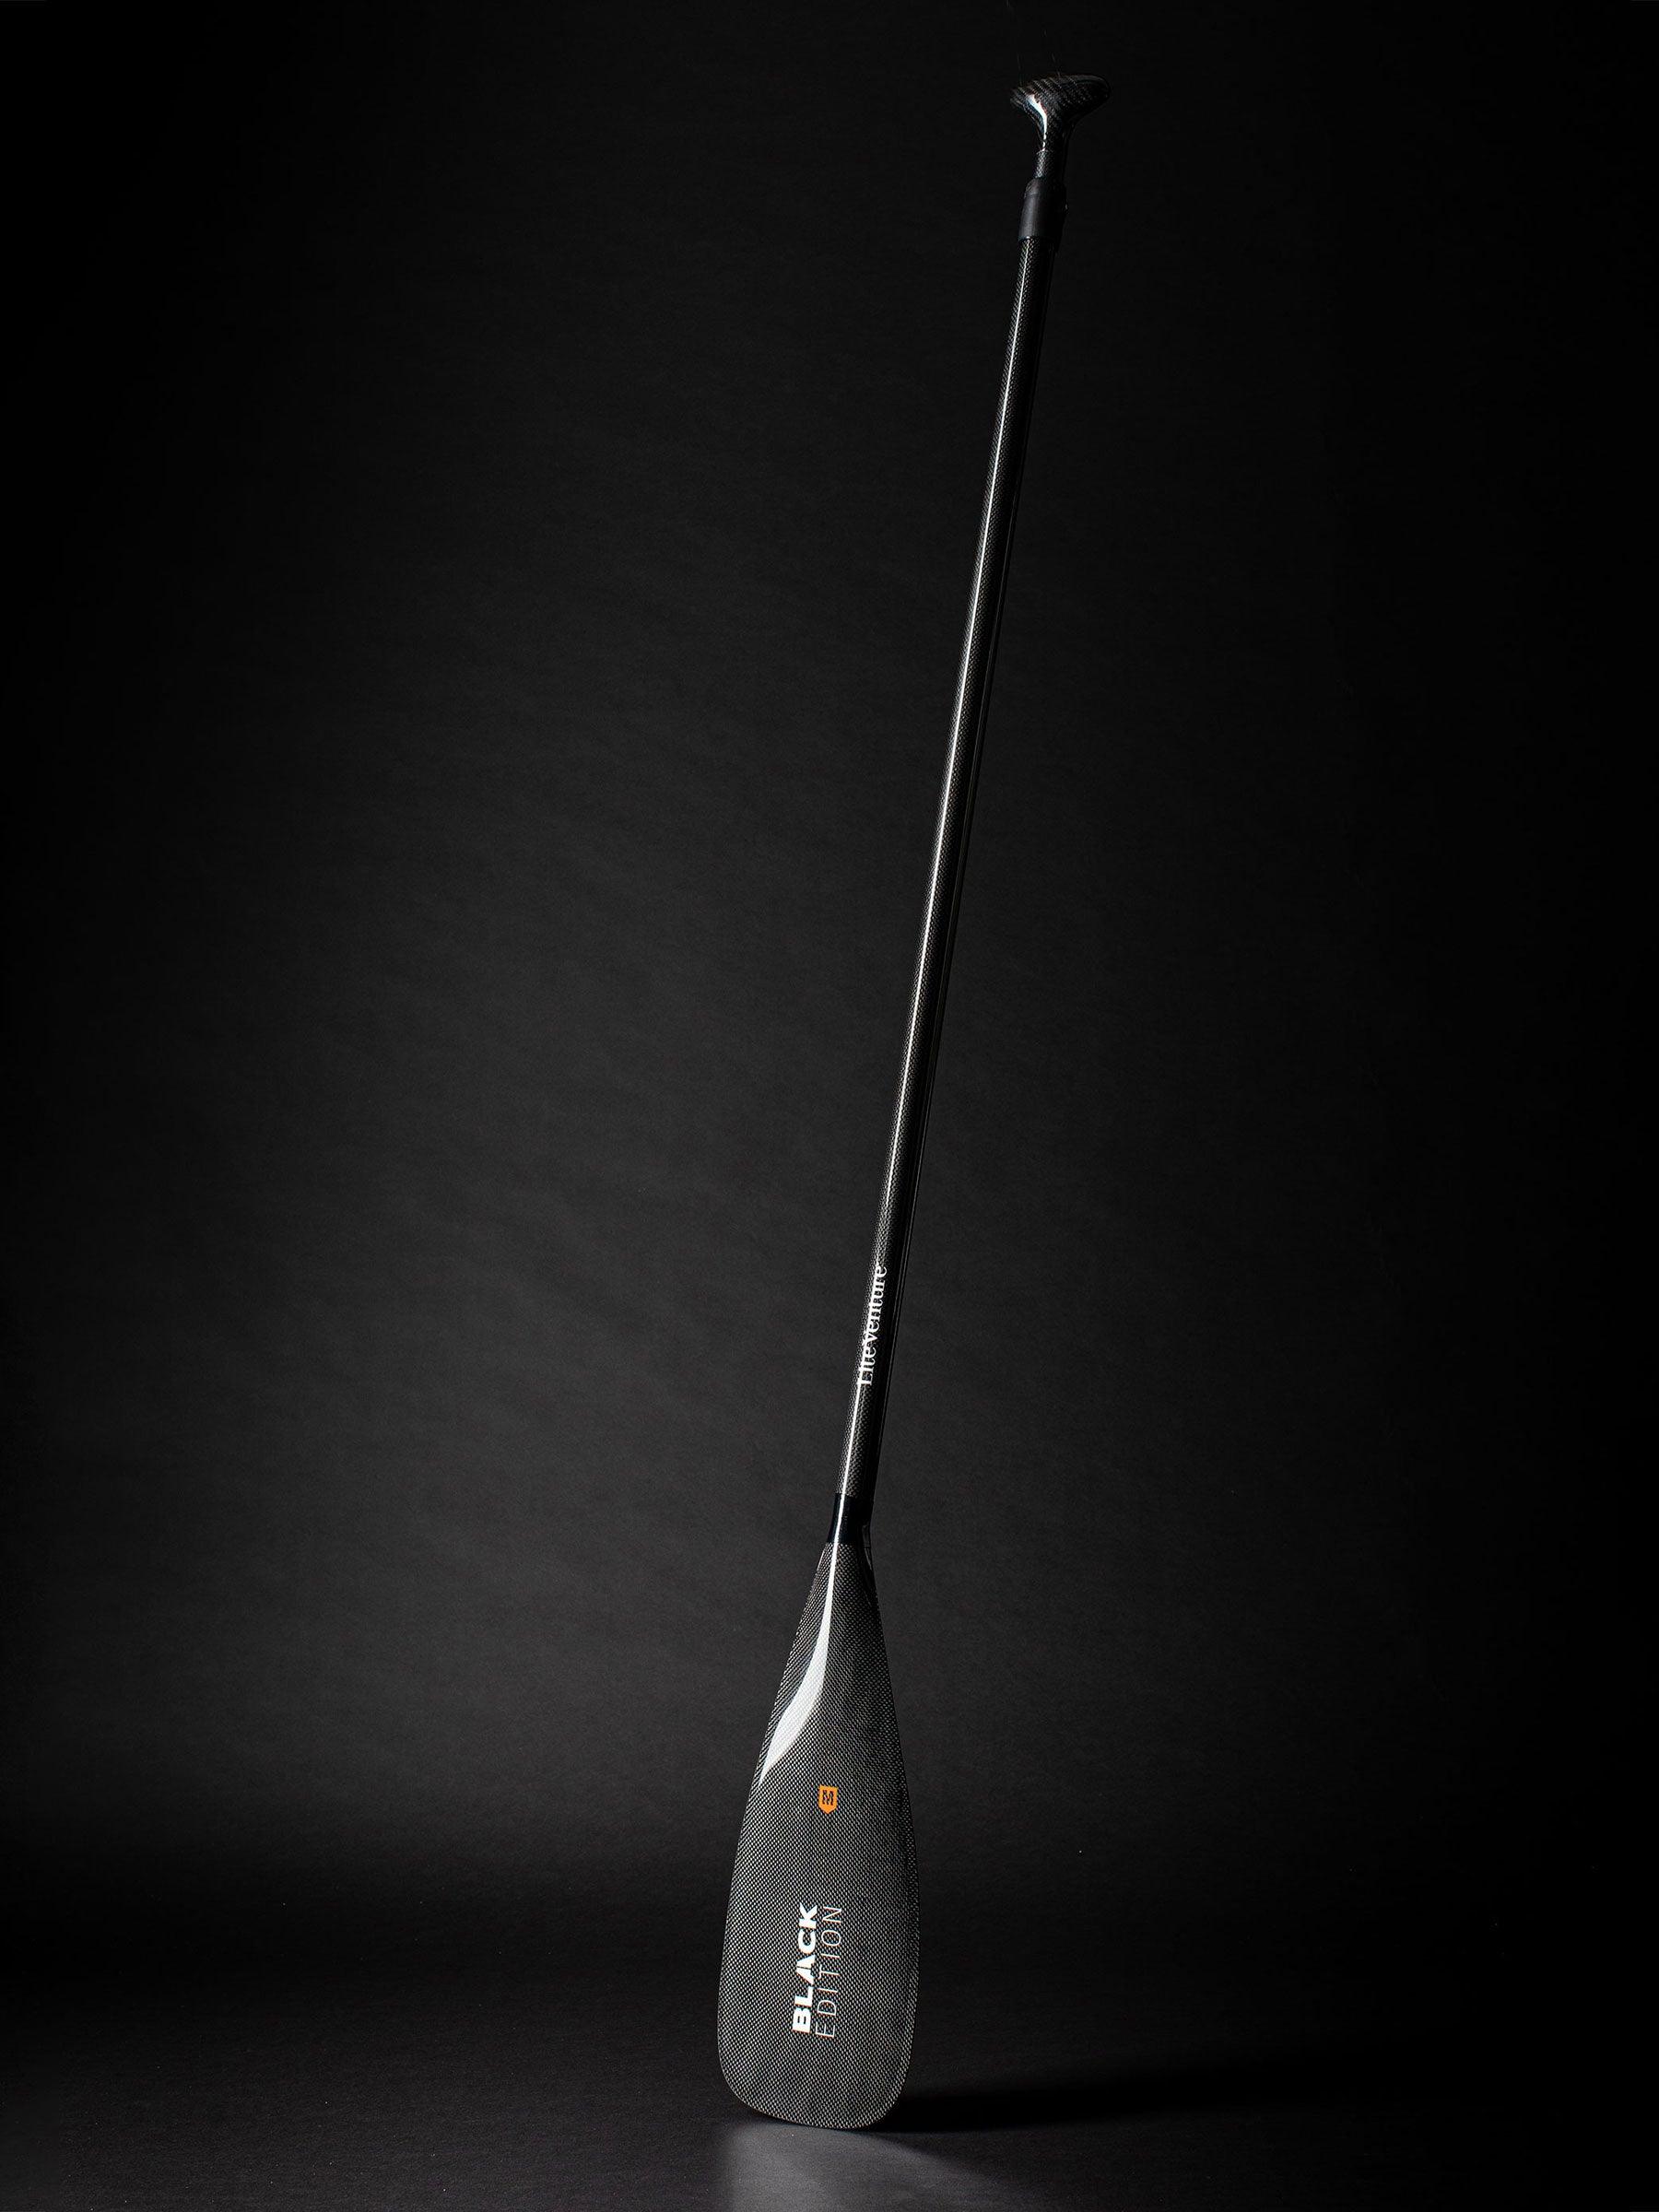 Produktbild von SUP " ULTRA Fast Bundle-14'0" x 28"-orange grau-+ Carbonpaddel " der Marke Lite Venture für 1390.00 €. Erhältlich online bei Lite Venture ( www.liteventure.de )